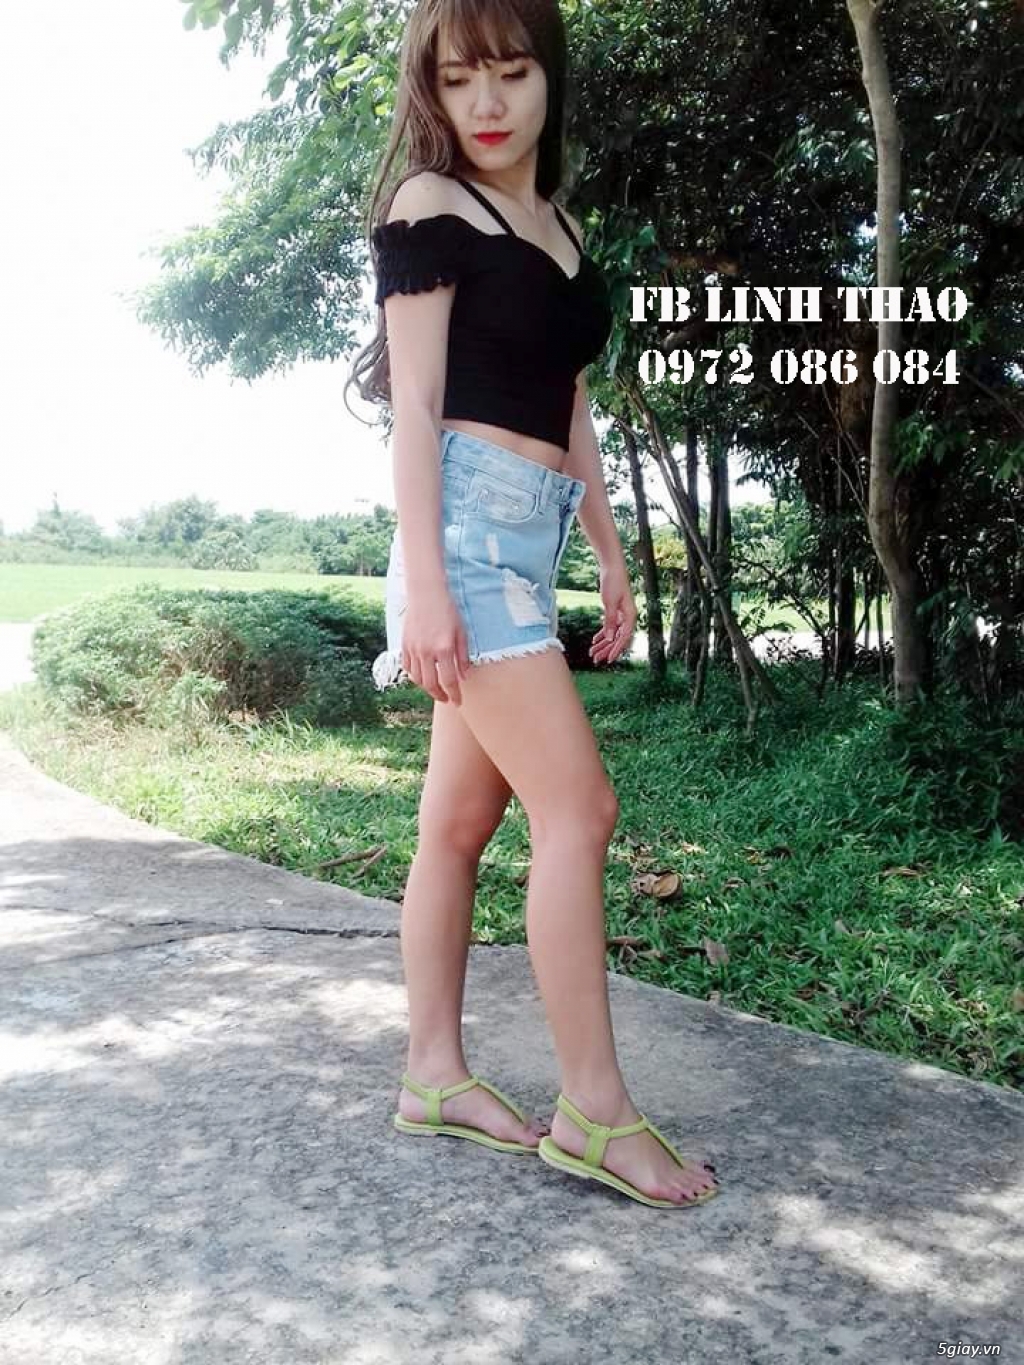 LT Beauty Store - Mỹ Phẩm, Quần áo nhập trực tiếp từ Thái Lan